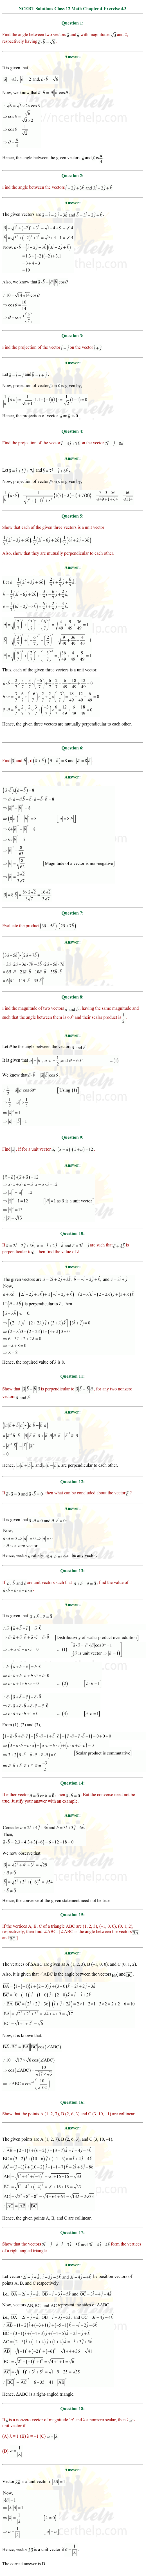 ex.10.3 Class 12 Math Chapter 10 ncert solutions